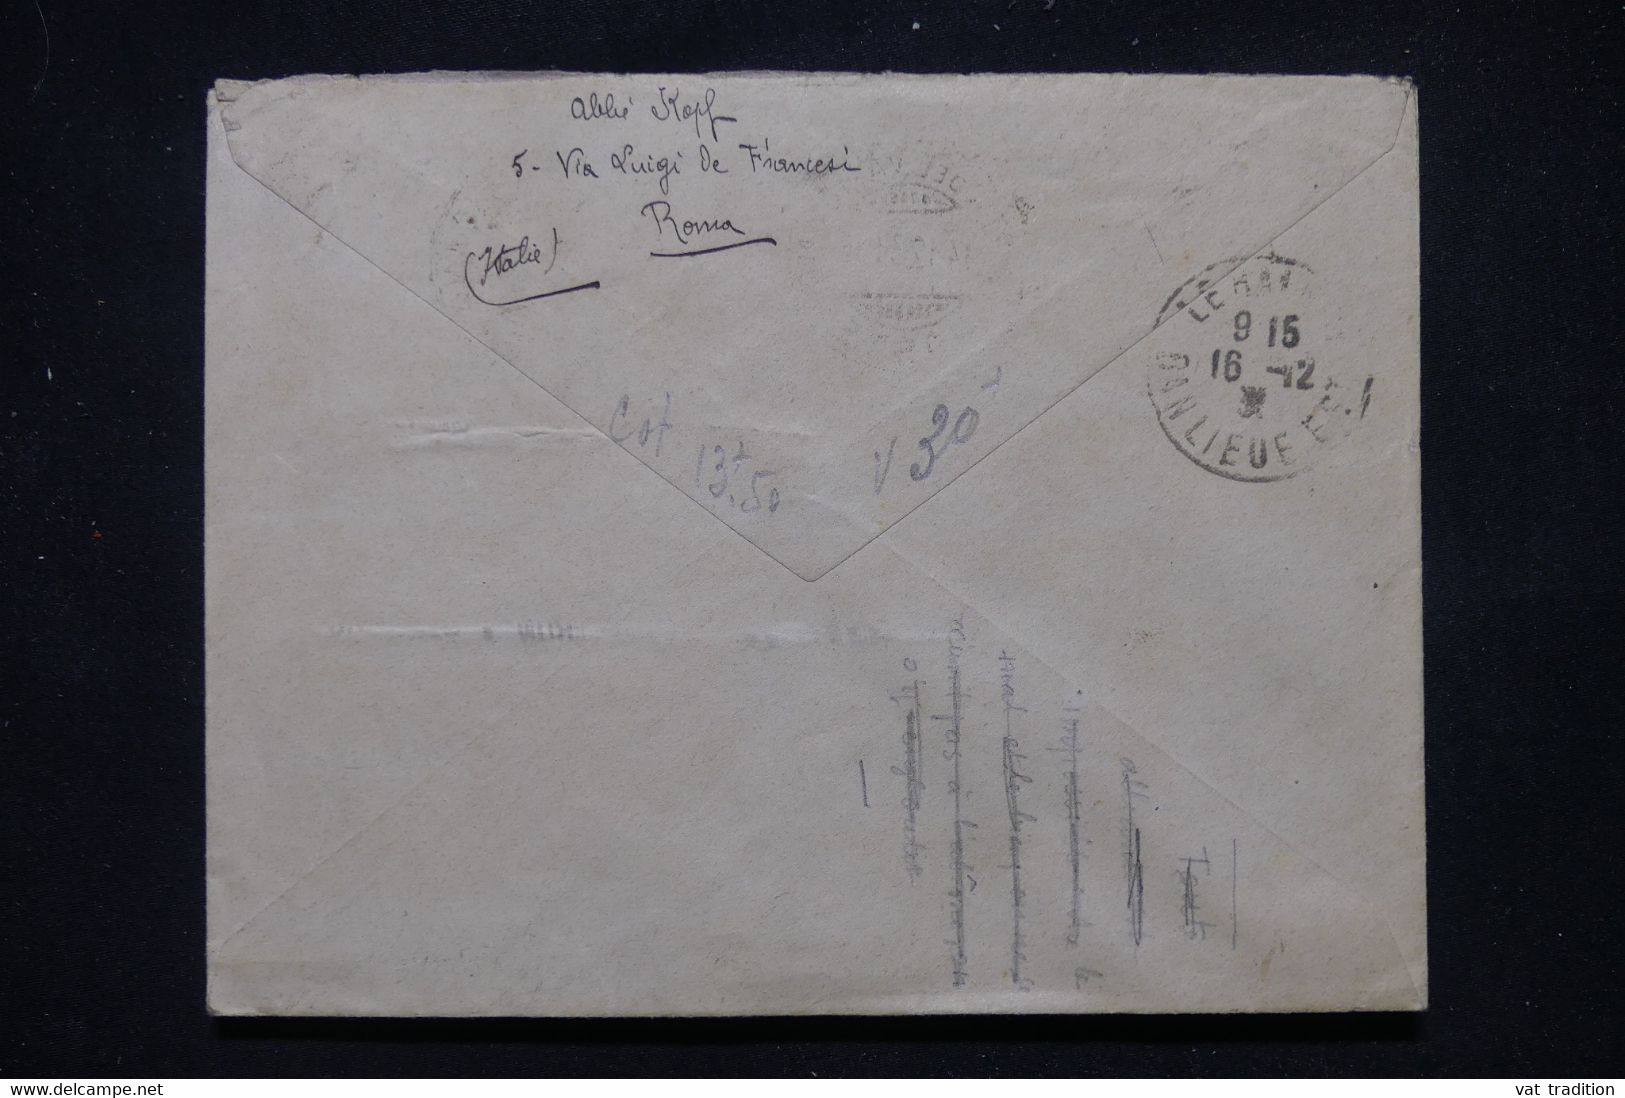 VATICAN - Enveloppe Pour La France En 1931, Affranchissement Varié - L 110677 - Brieven En Documenten